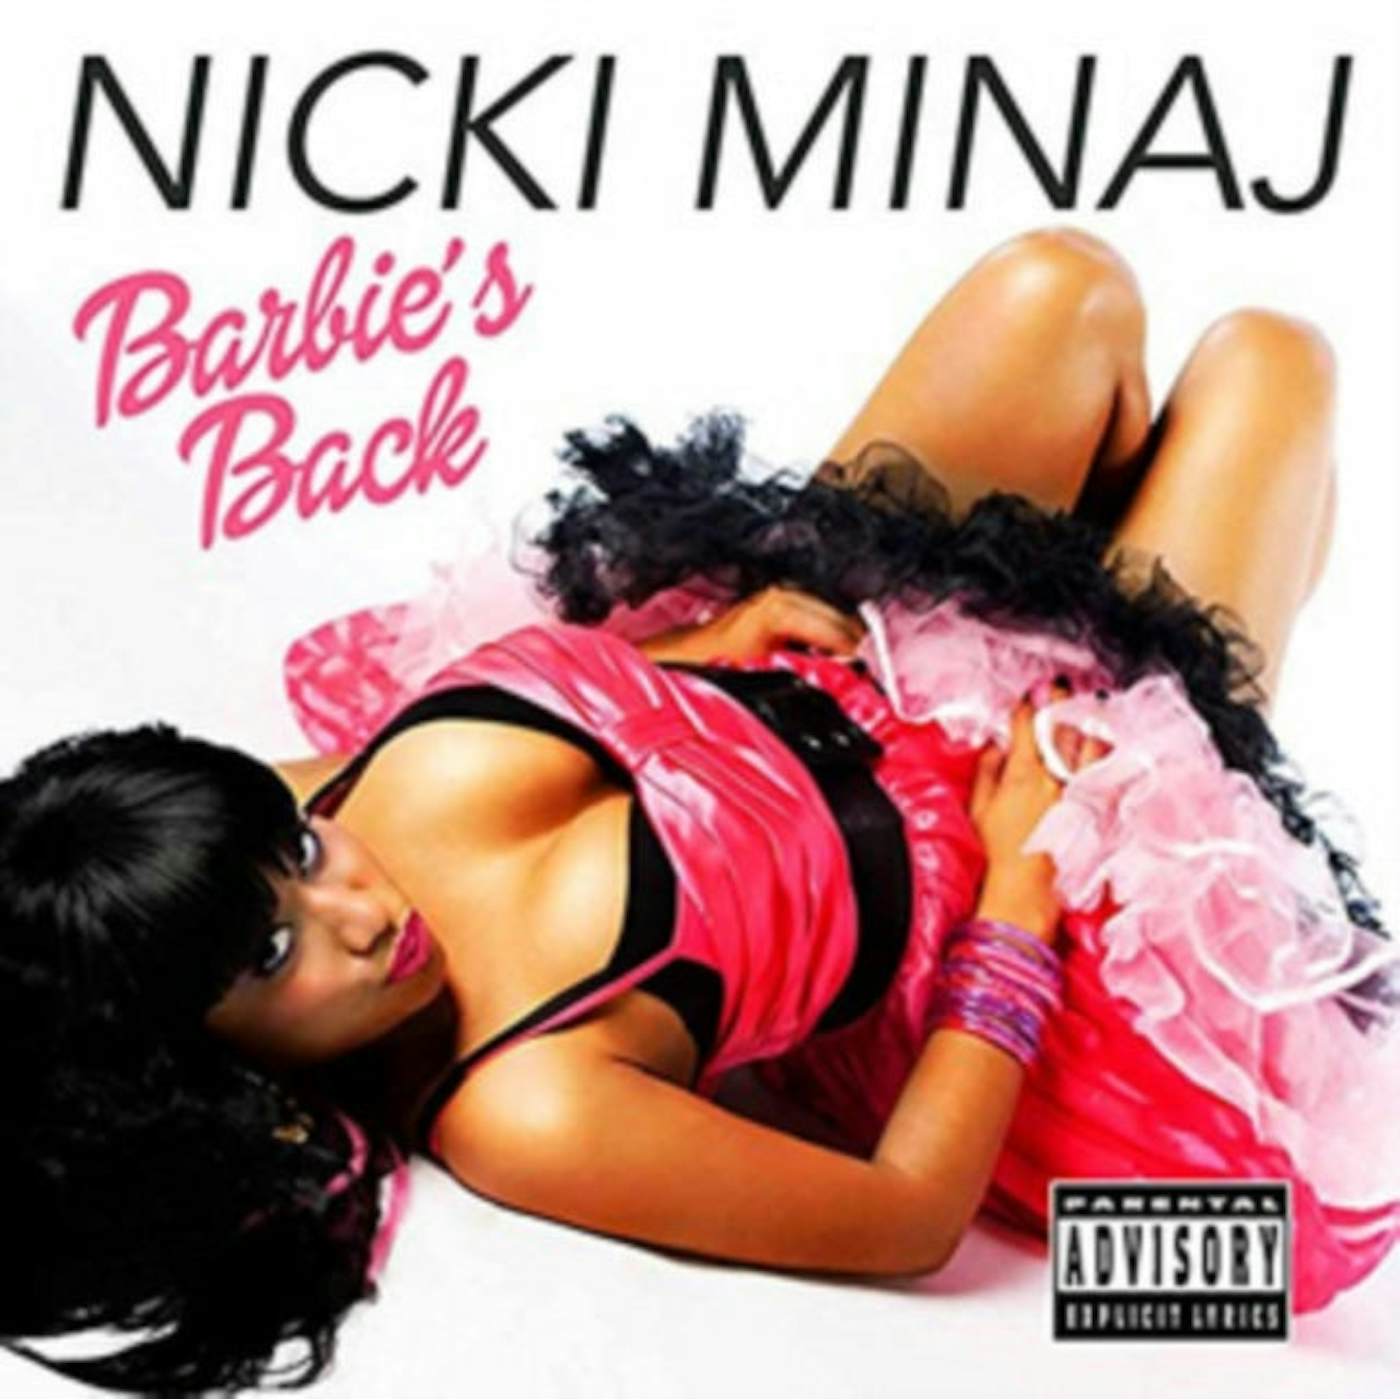  Nicki Minaj CD - Barbie's Back